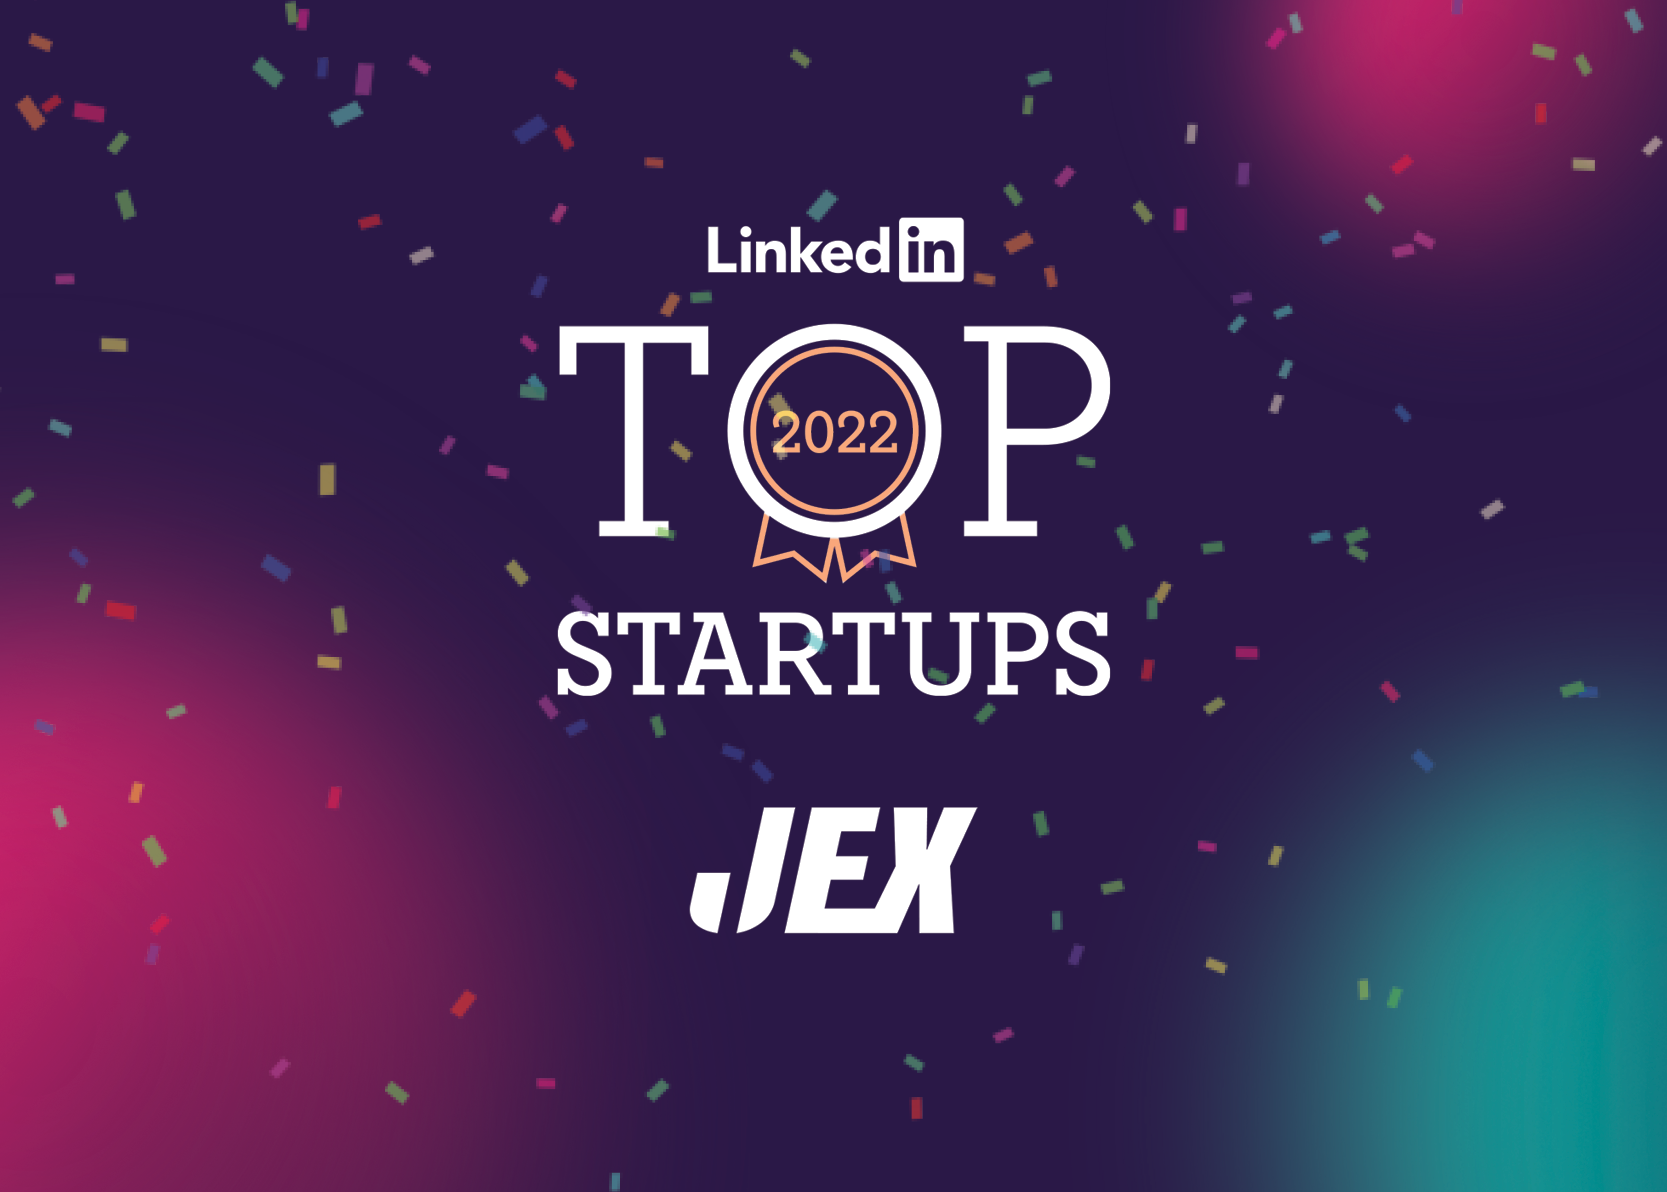 JEX jongste bedrijf in LinkedIn Top 10 Startups 2022